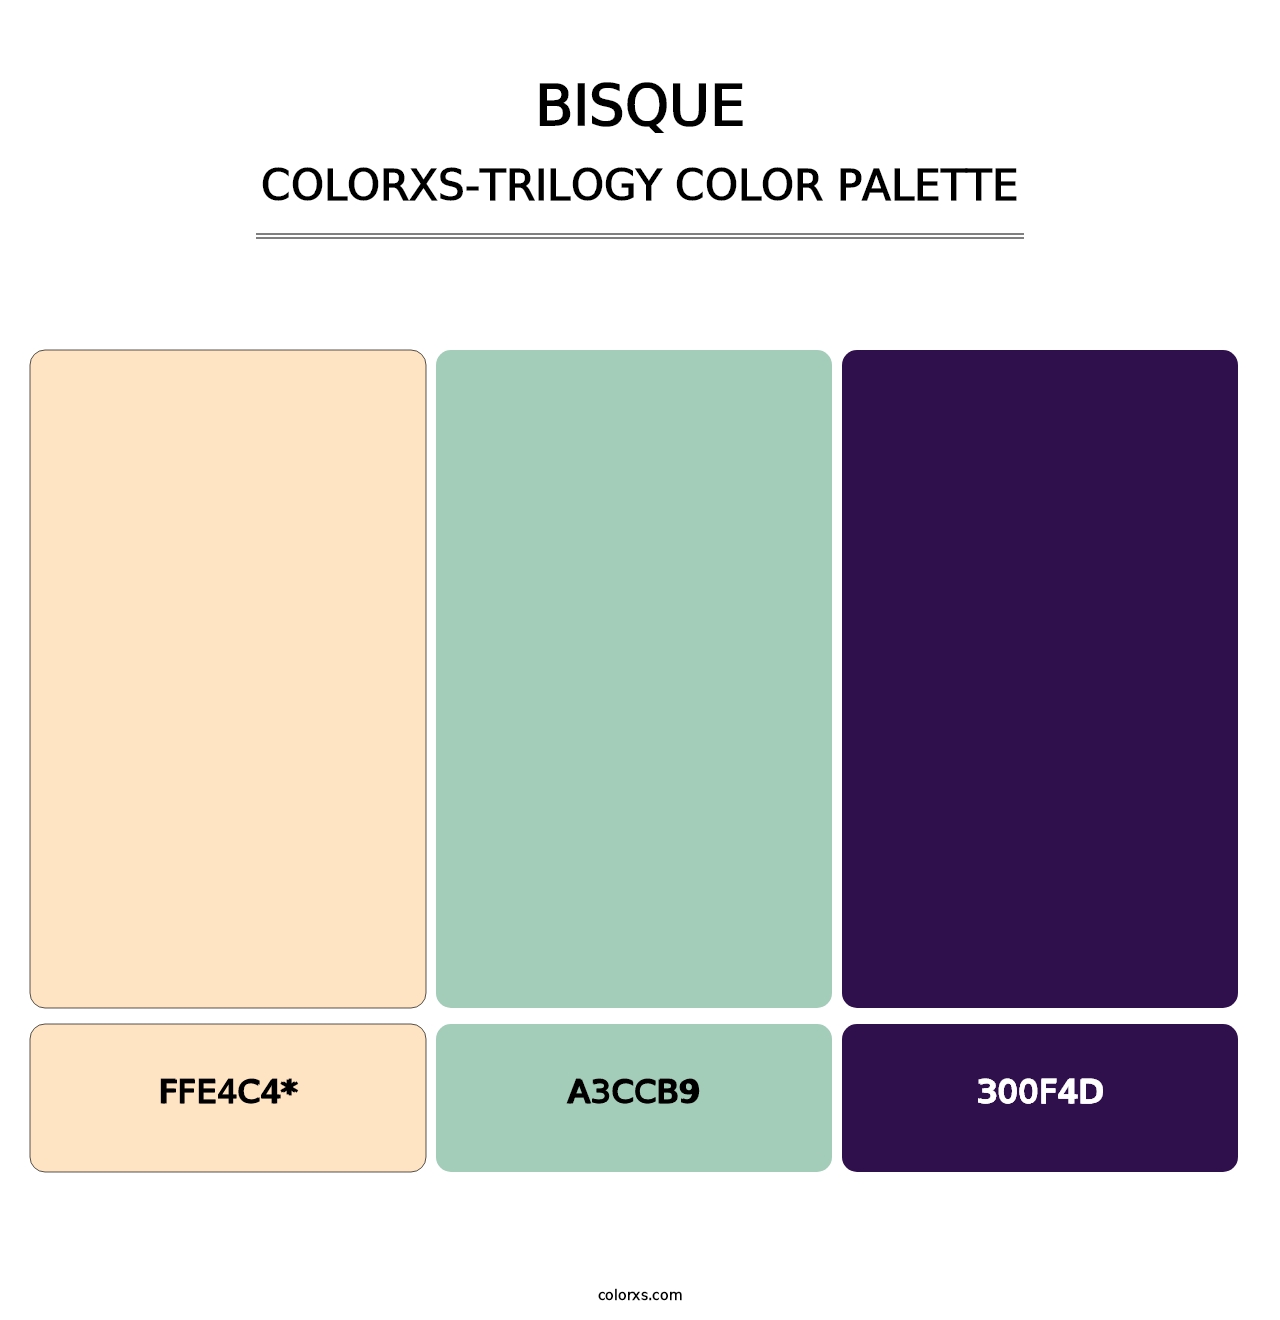 Bisque - Colorxs Trilogy Palette